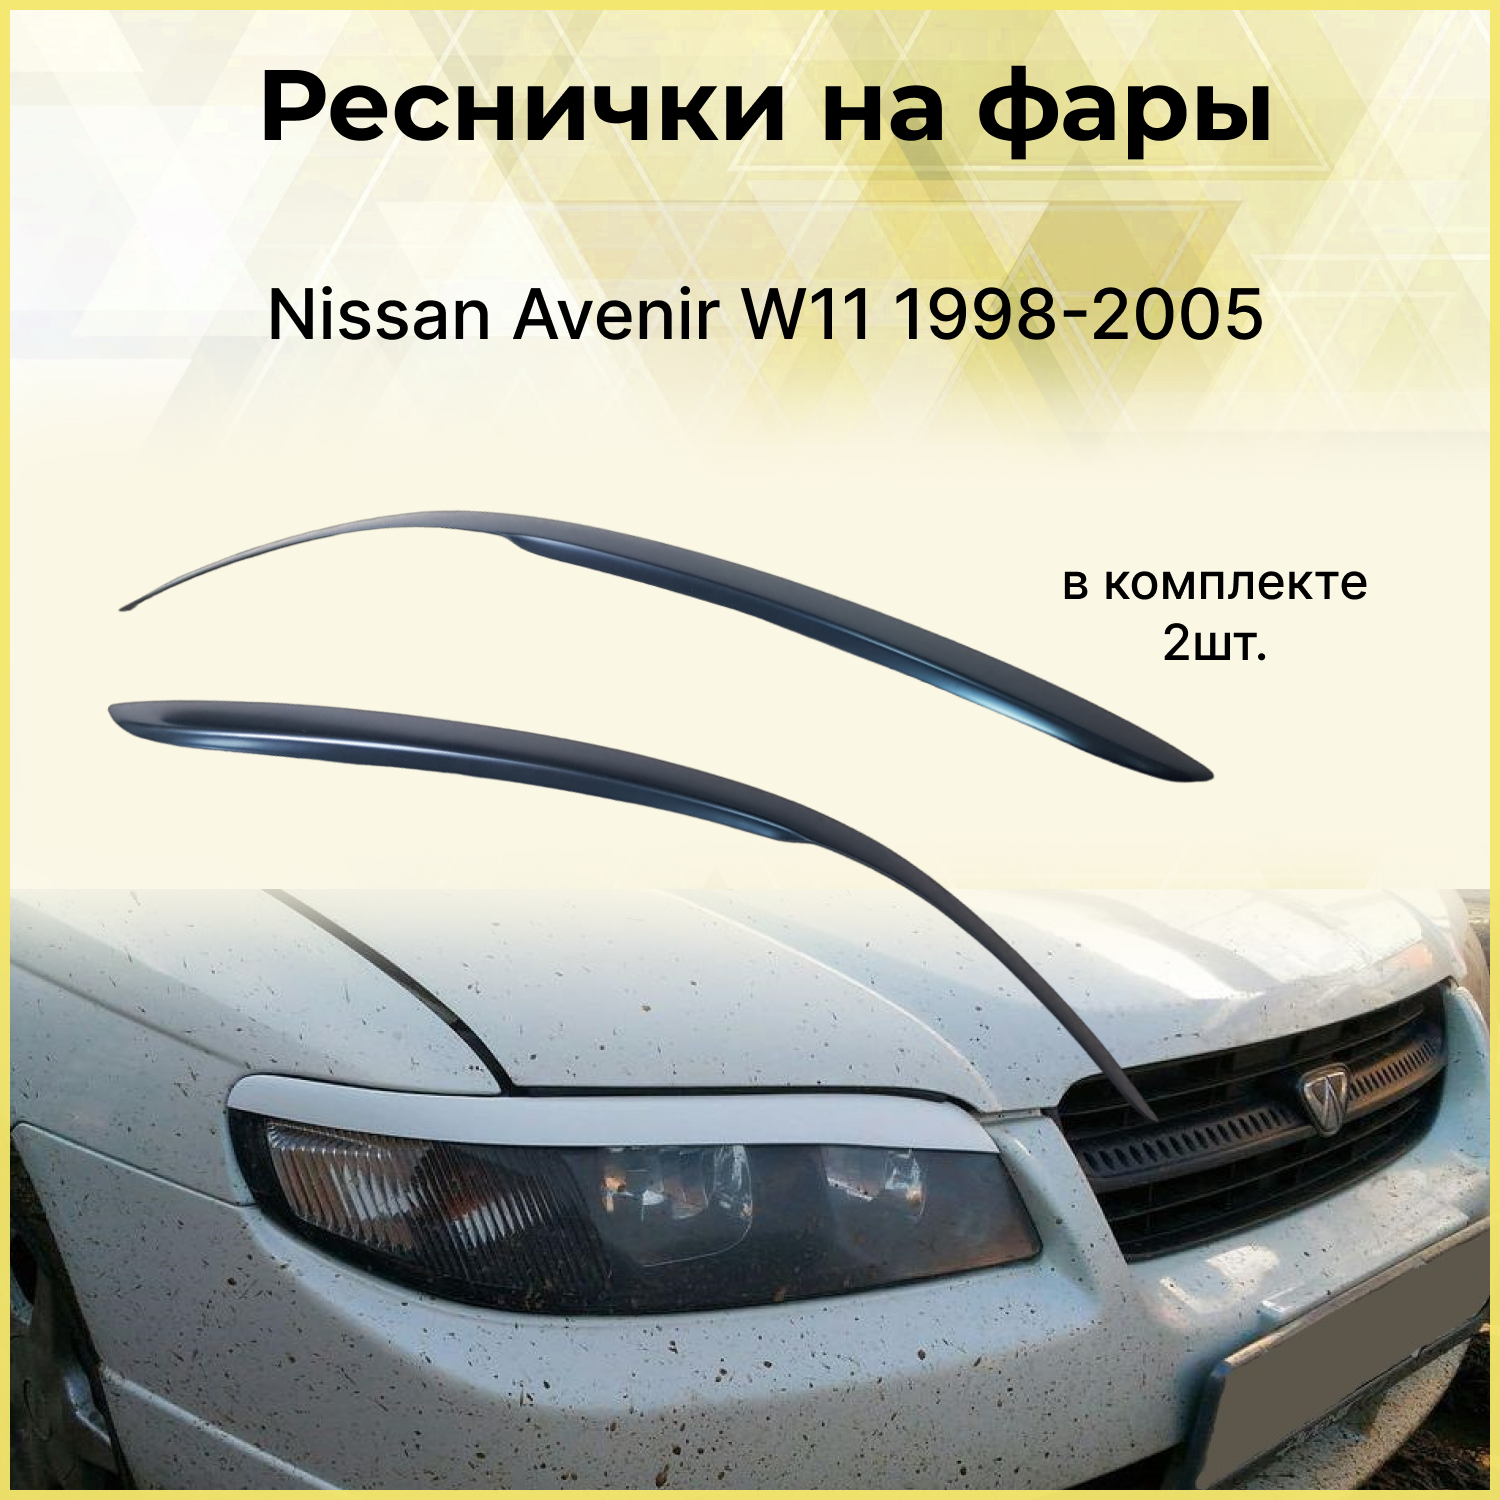 Реснички на фары для Nissan Avenir W11 1998-2005